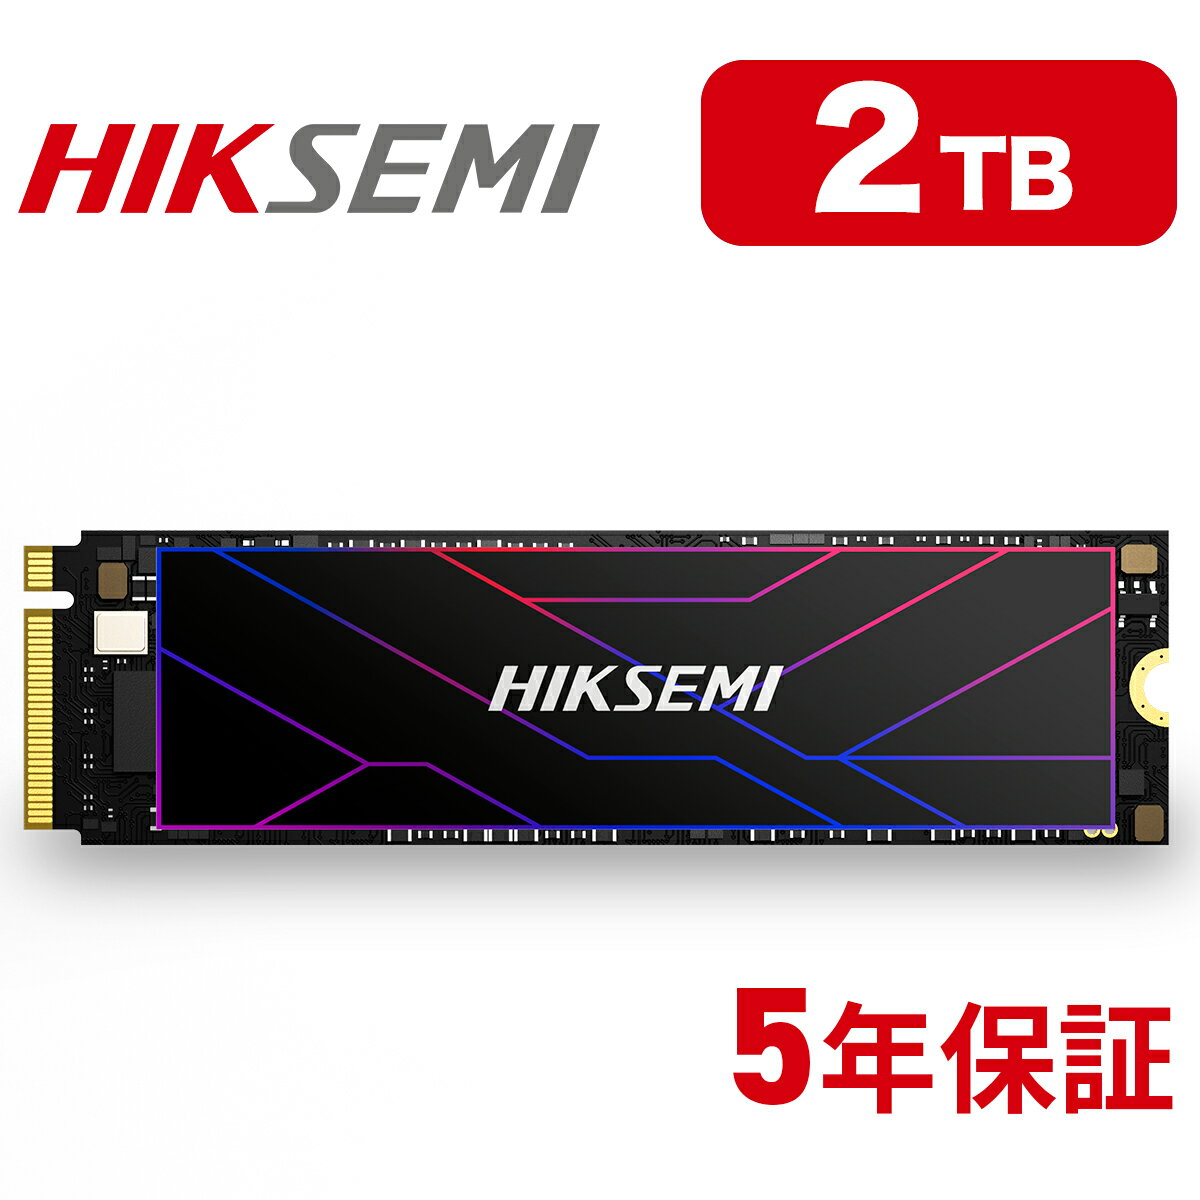 HIKSEMI SSD 2TB 放熱シート付き 高耐久性(TBW:3600TB) NVMe SSD PCIe Gen 4.0×4 読み取り:7,450MB/s 書き込み:6,750…